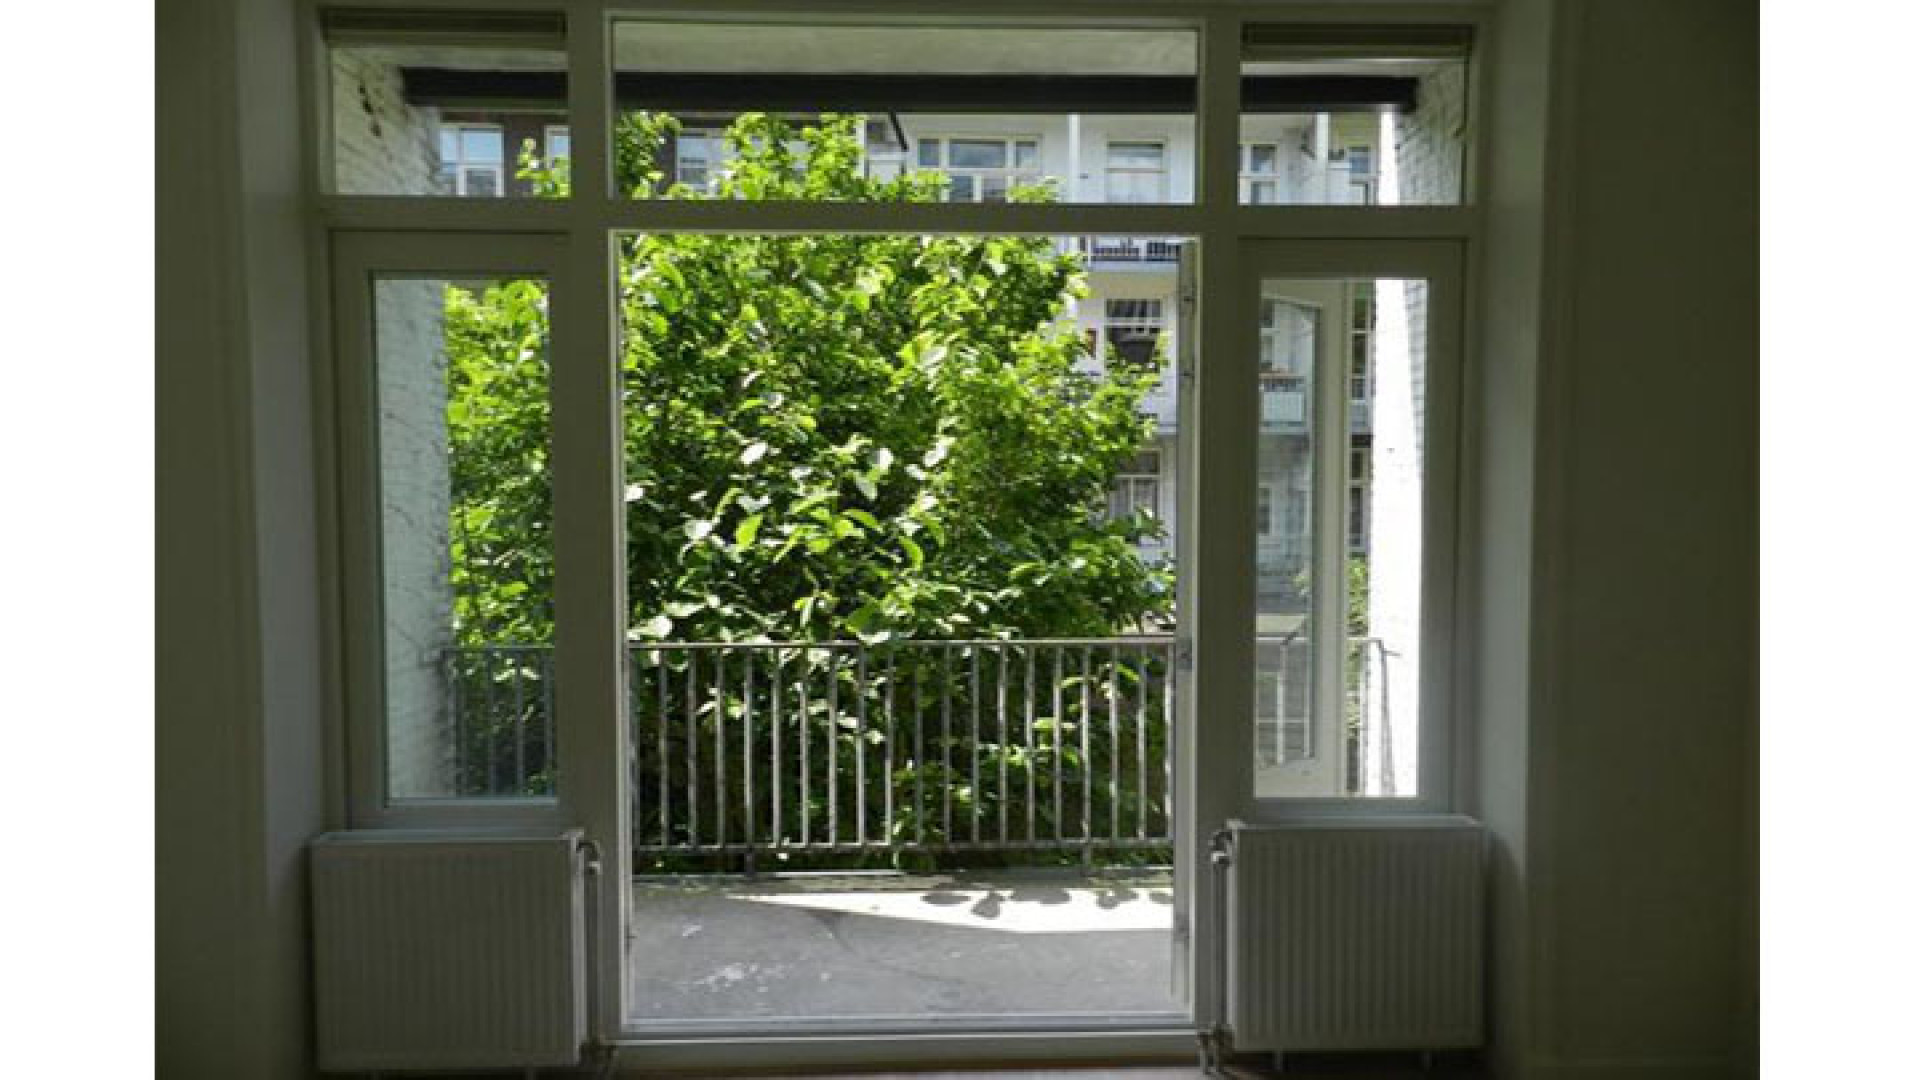 Marvin Breukhoven ruilt Haags optrekje in voor appartement in Amsterdam Oud Zuid. Zie foto's 8